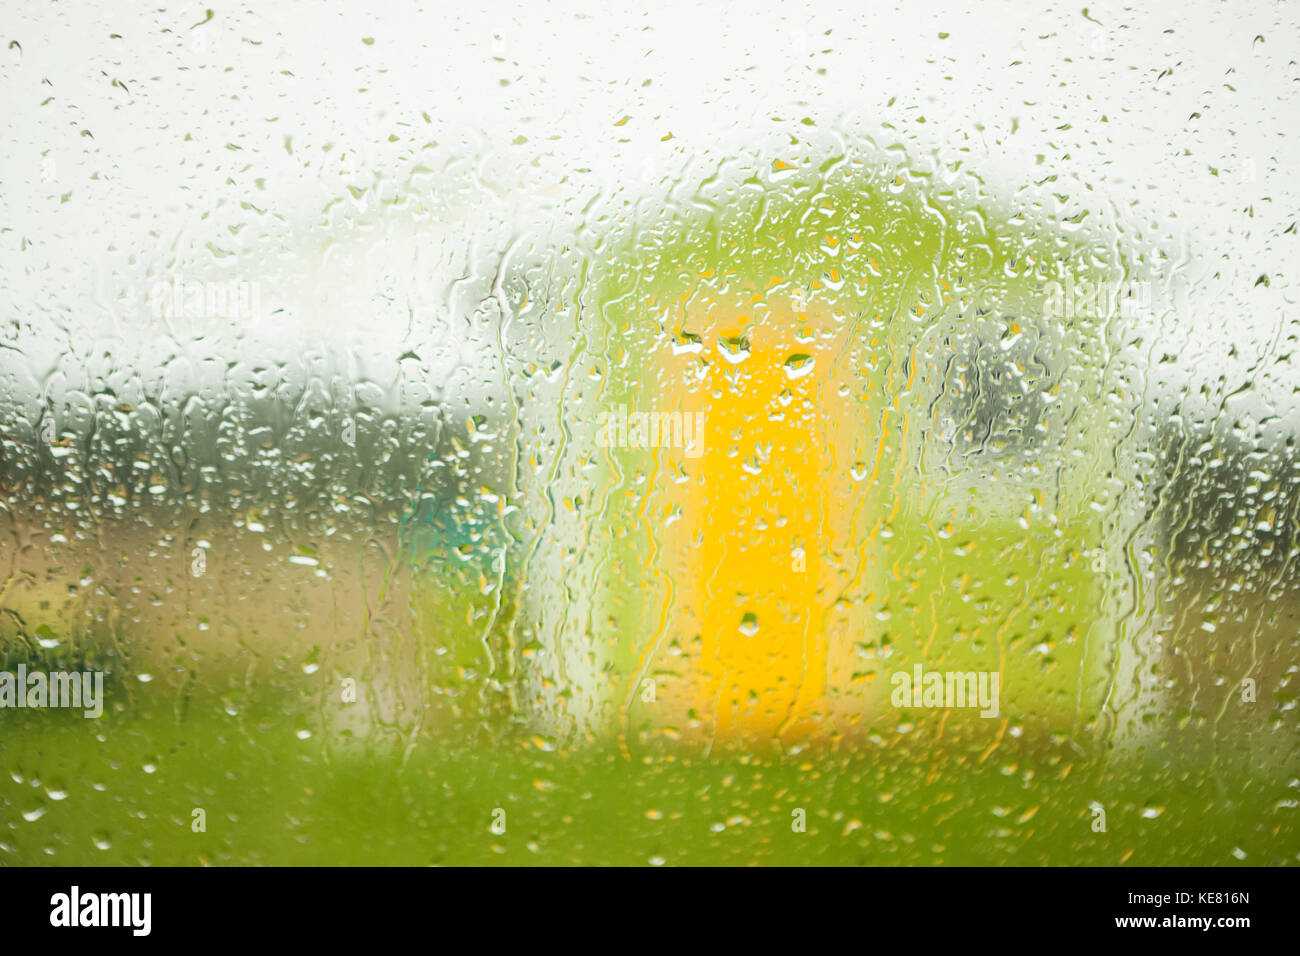 Un piccolo edificio verde con giallo porta e di una finestra vista attraverso una finestra bagnata con gocce di pioggia; Terranova, Canada Foto Stock